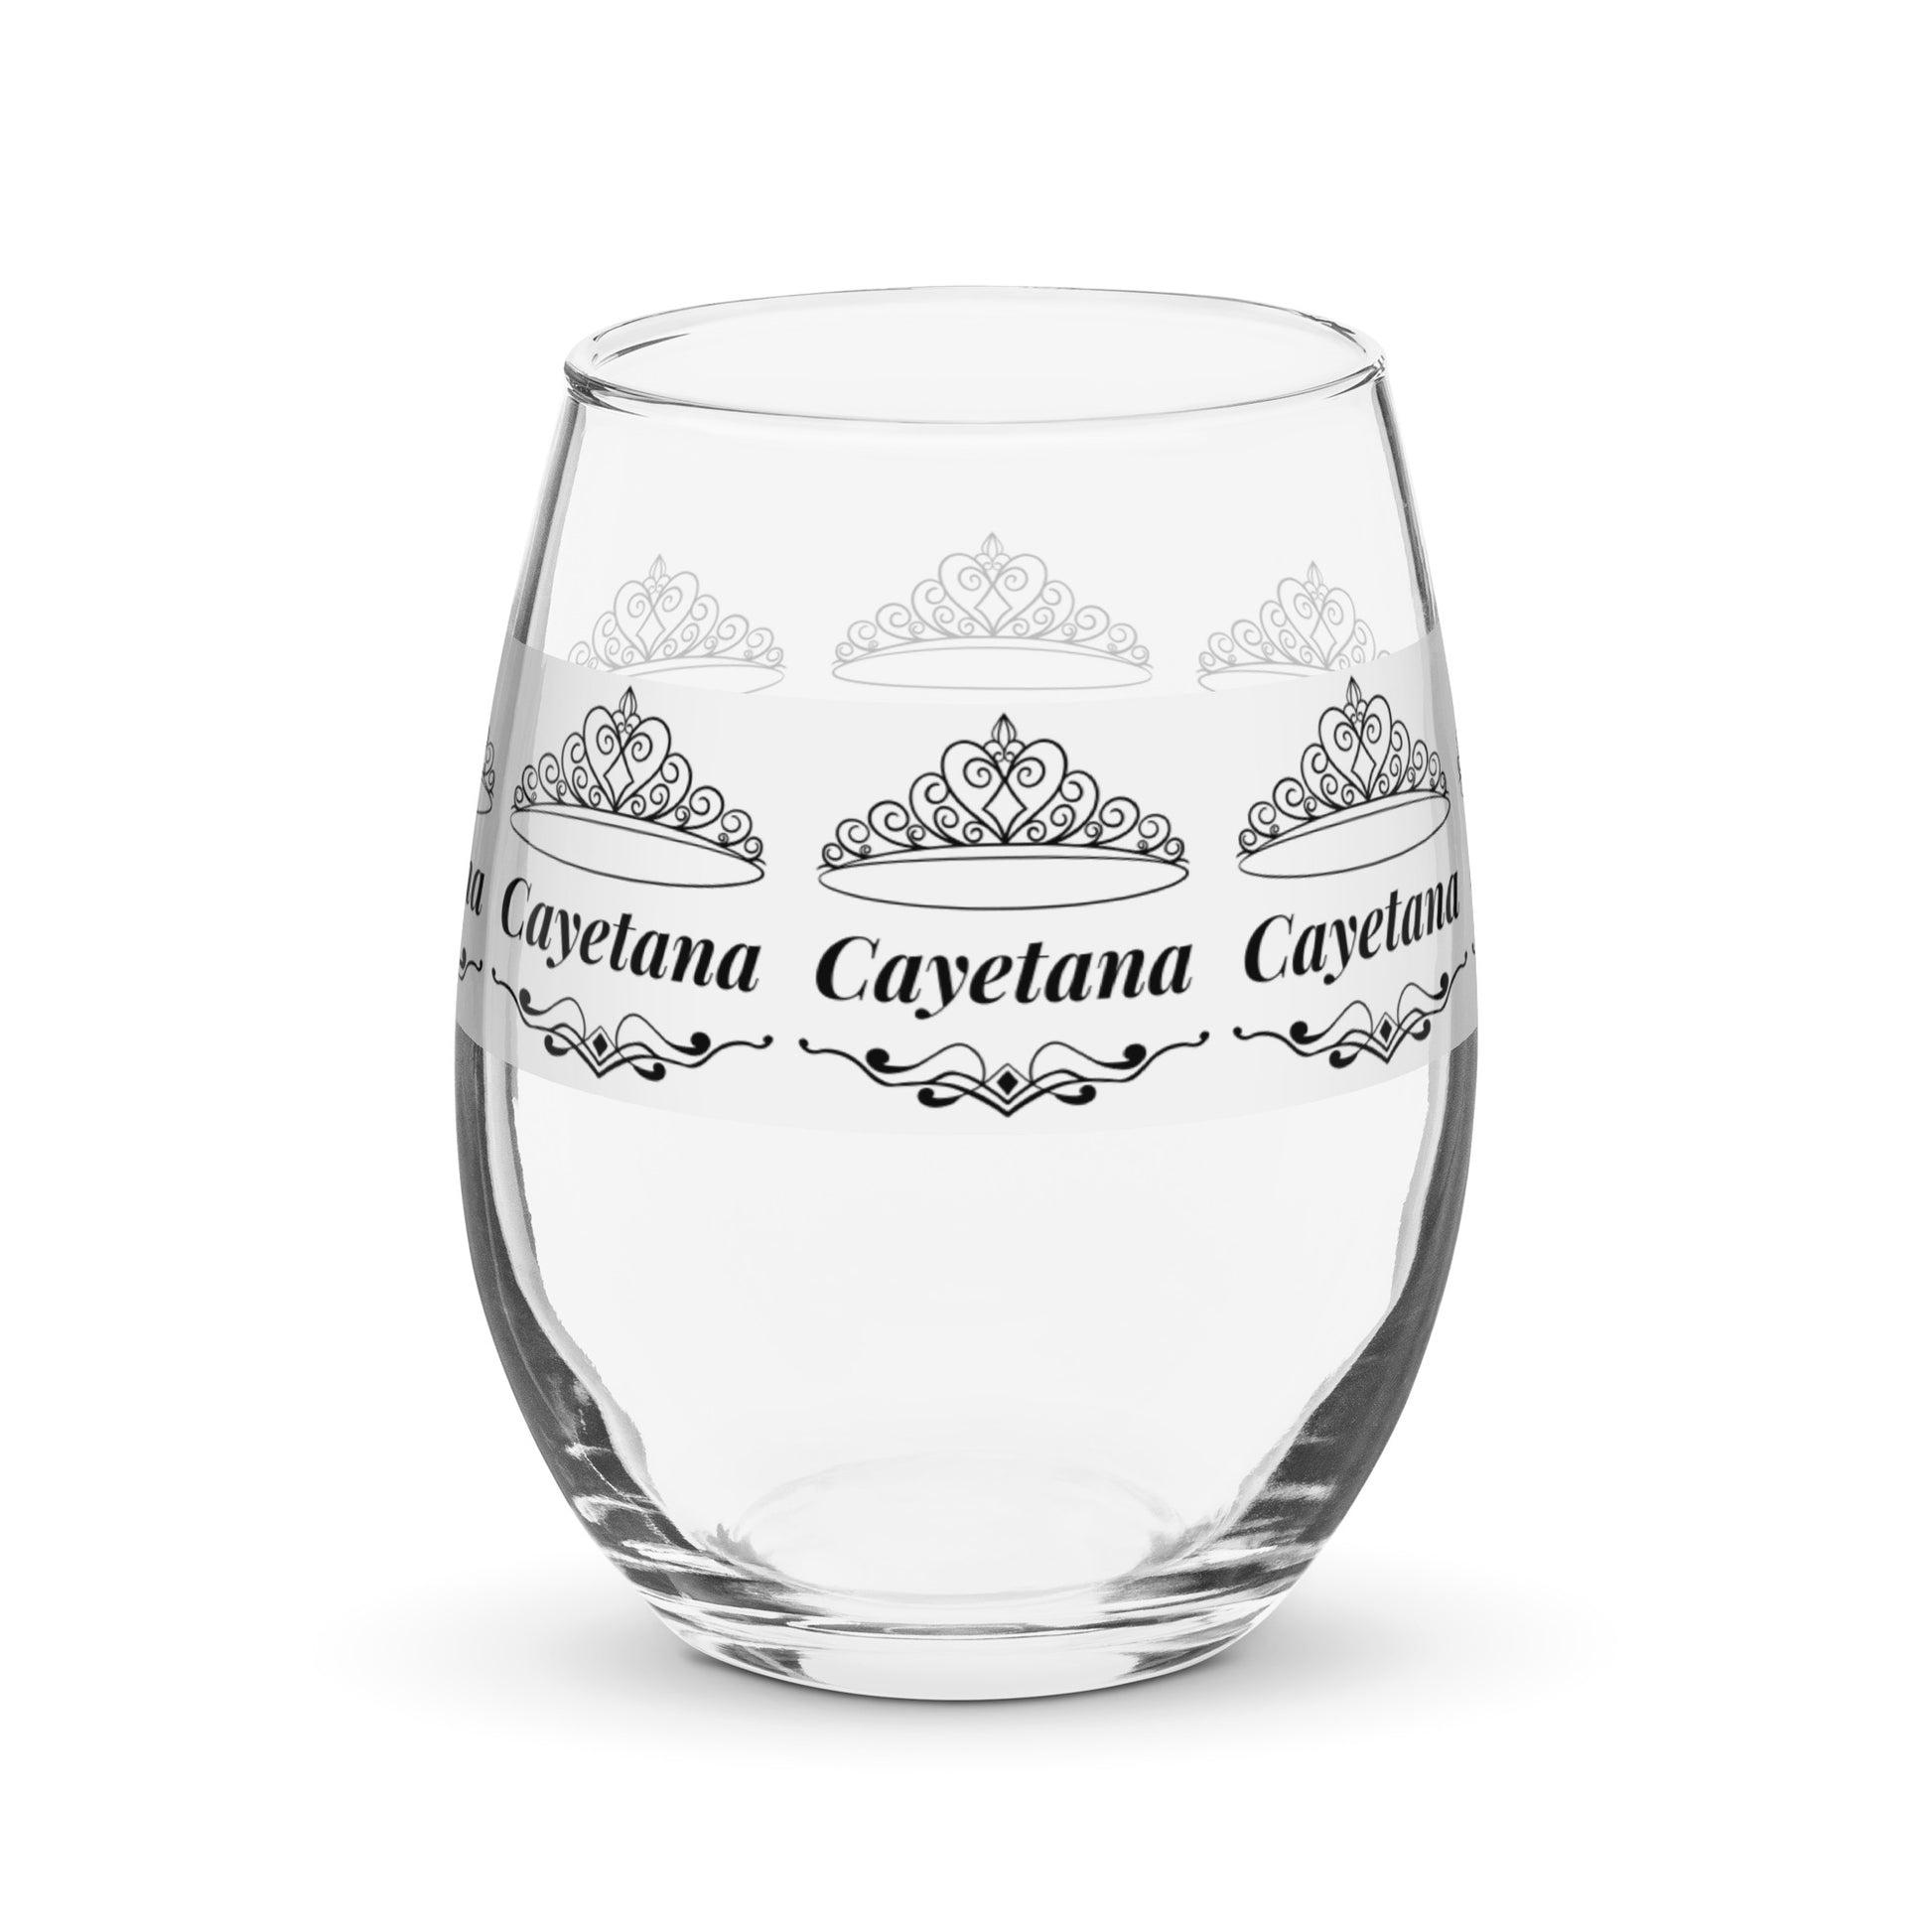 Cayetana name wine glass personalized wine glass wine glass